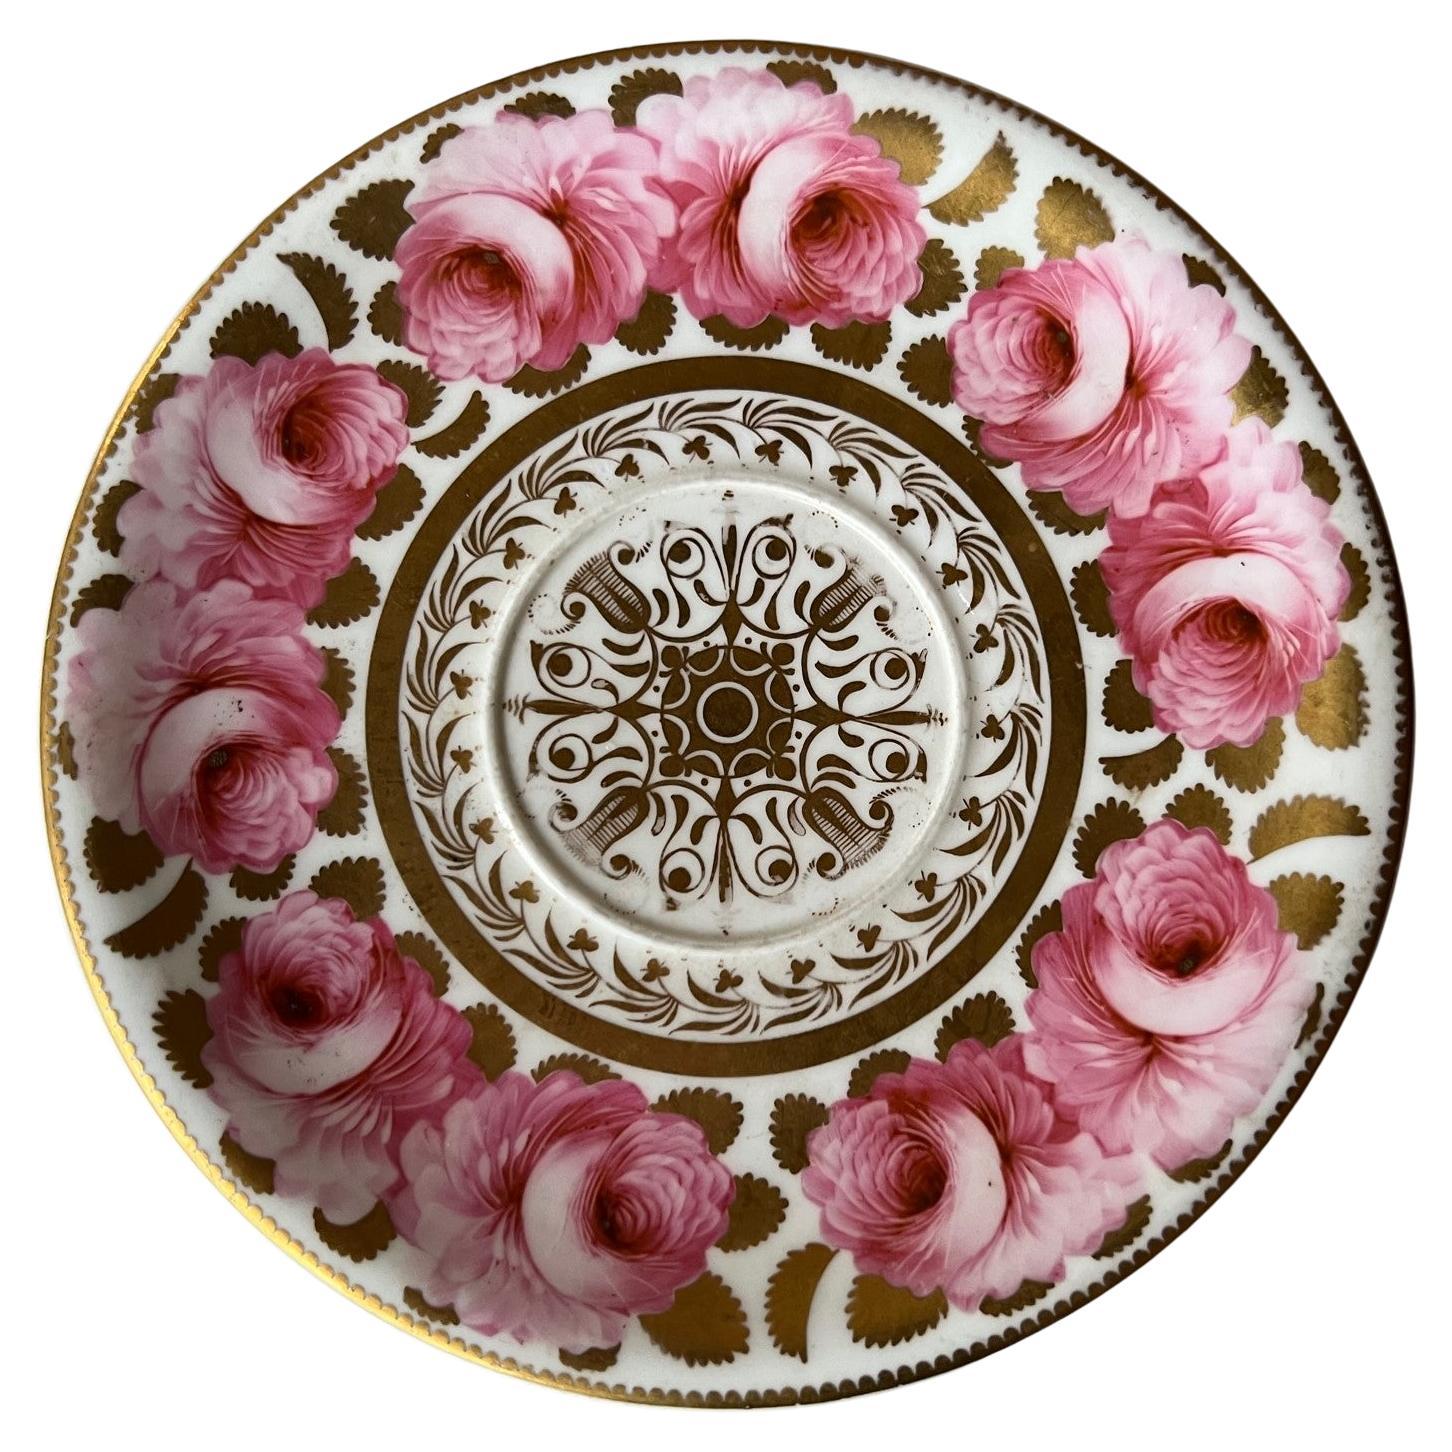 Assiette / soucoupe en porcelaine peinte à la main Spode, vers 1820